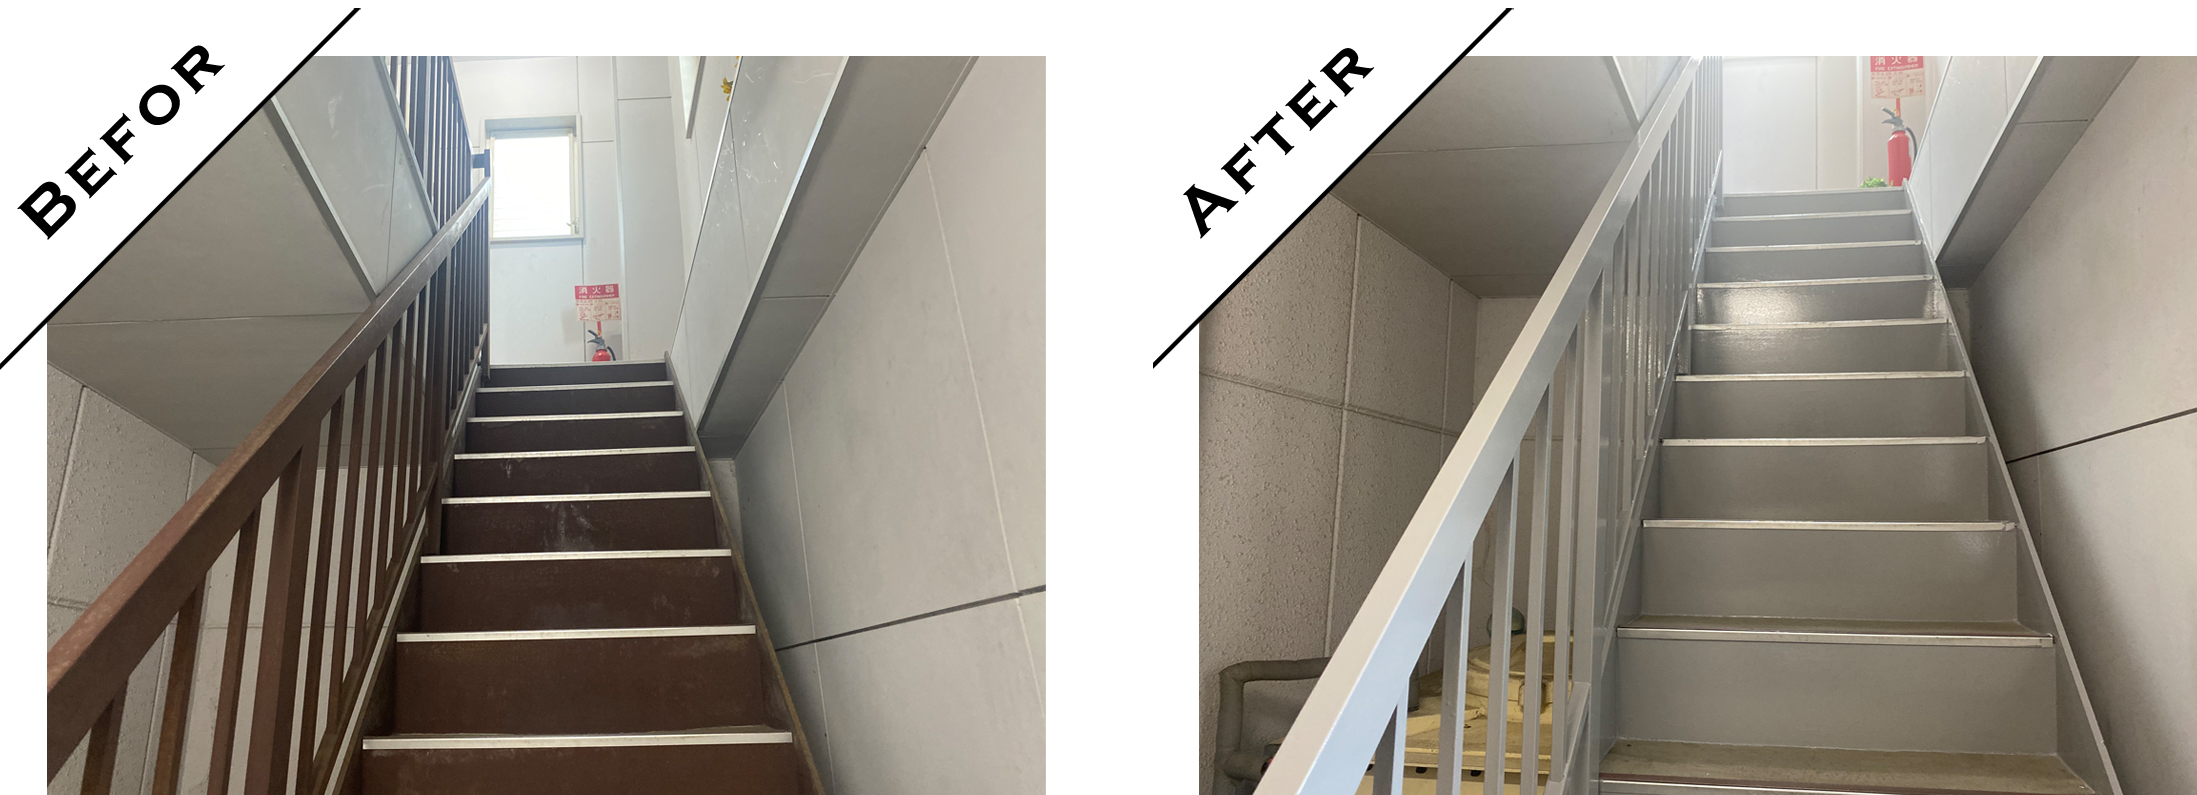 会社事務所の階段を、サビや汚れなどを綺麗に落とし新しく塗装し直しました。